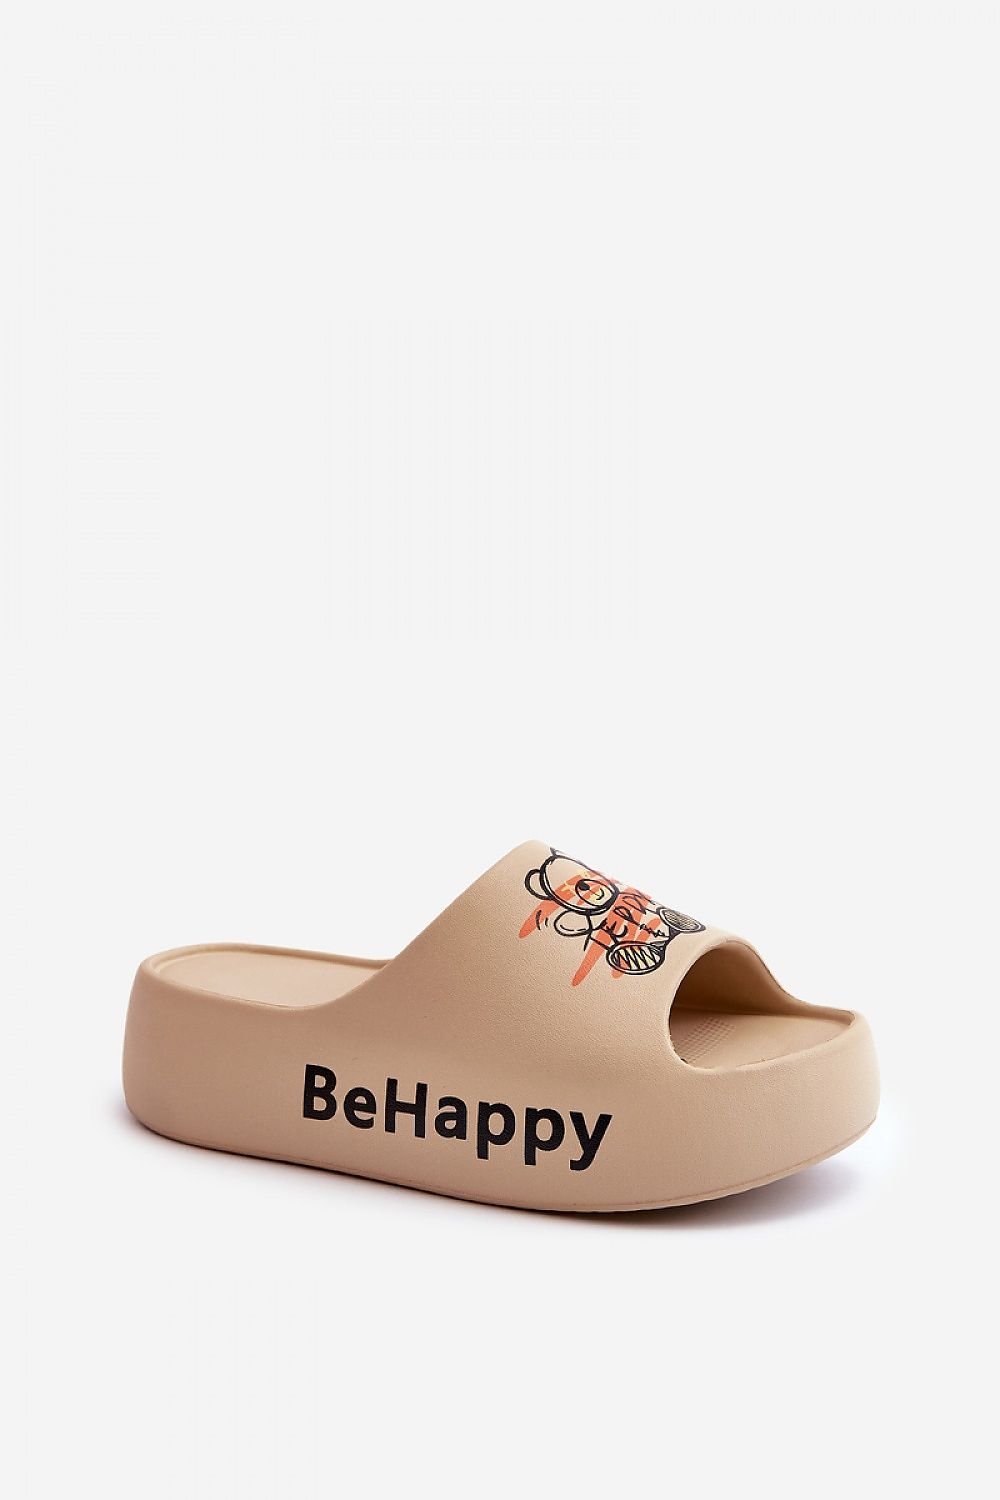 TEEK - Be Happy Bear Platform Slides SHOES TEEK MH beige 6 